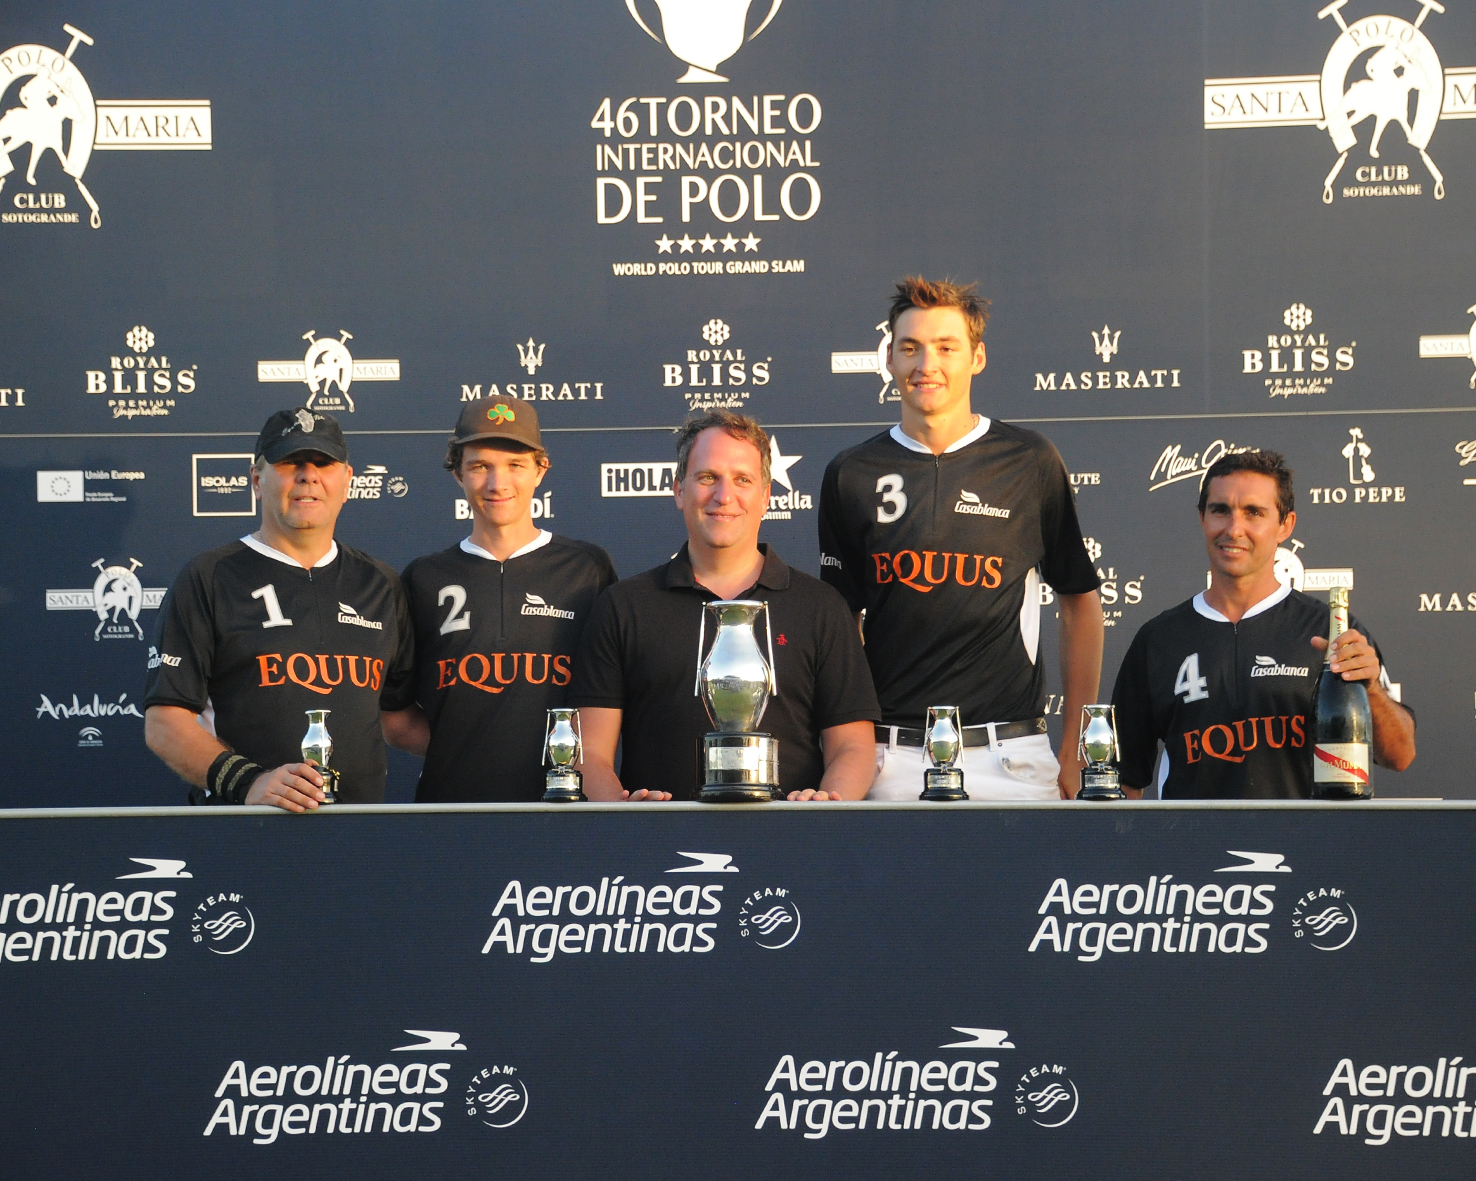 equus ganador de la copa de plata aerolineas argentinas